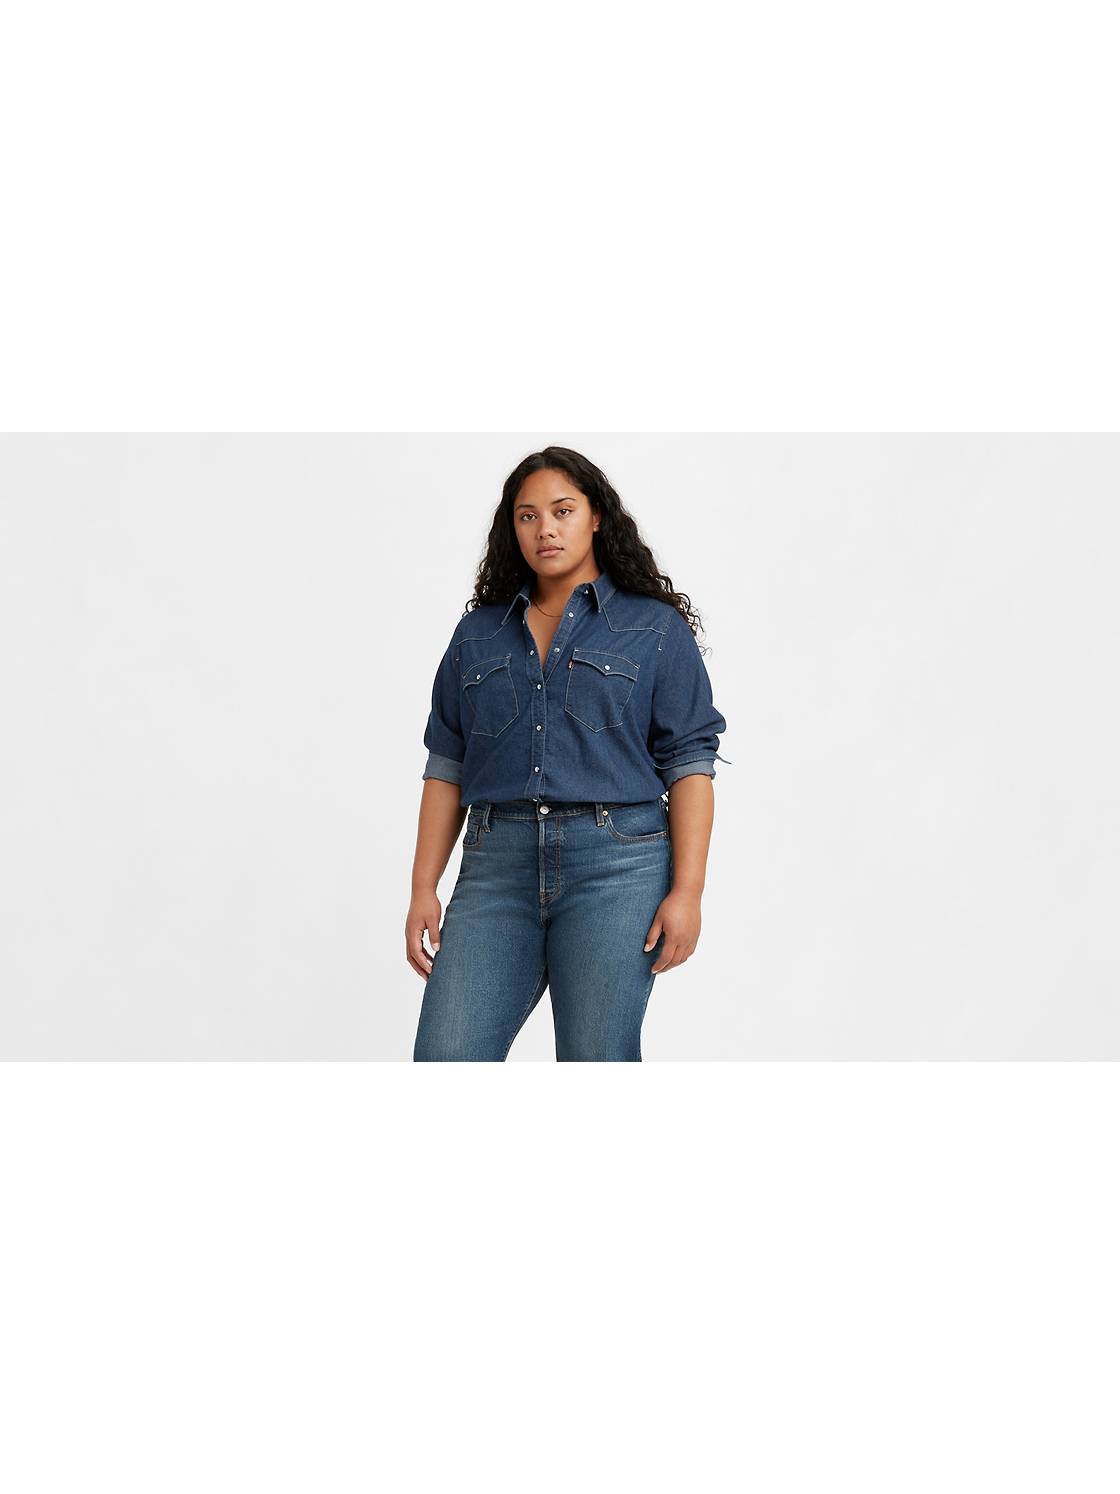 Borger Rejse tiltale Original Women's Plus Size Tops - Shop Plus Size T-Shirts | Levi's® US